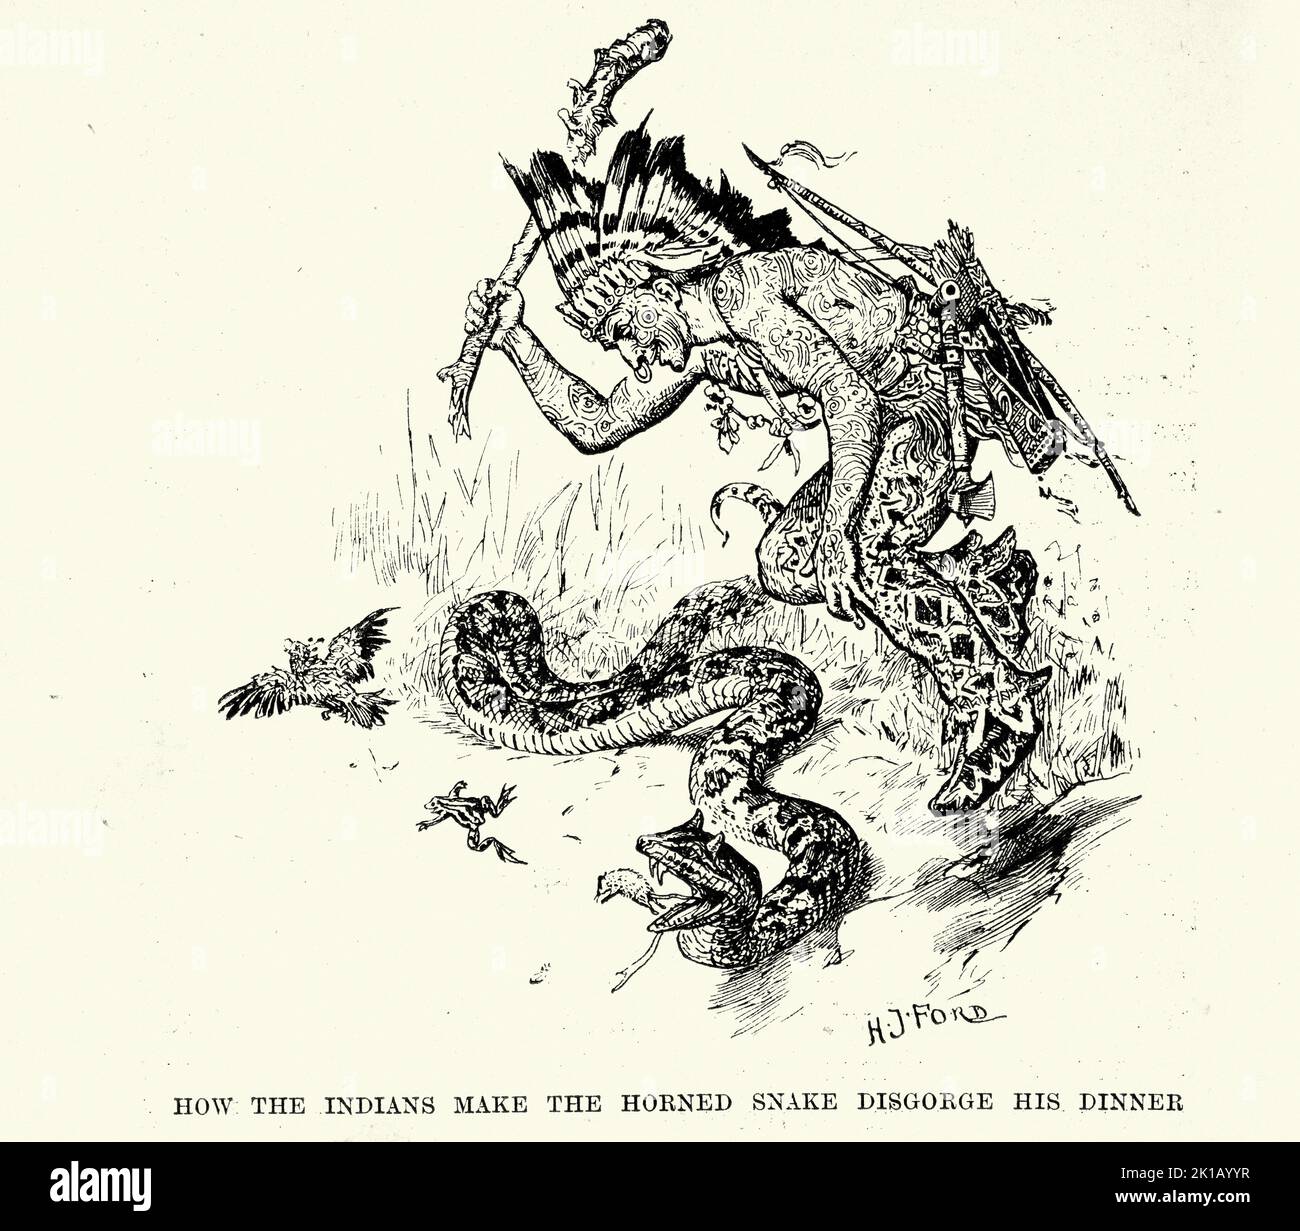 Ilustración vintage, cazador nativo americano atacando serpiente con cuernos, historia de aventura victoriana Foto de stock